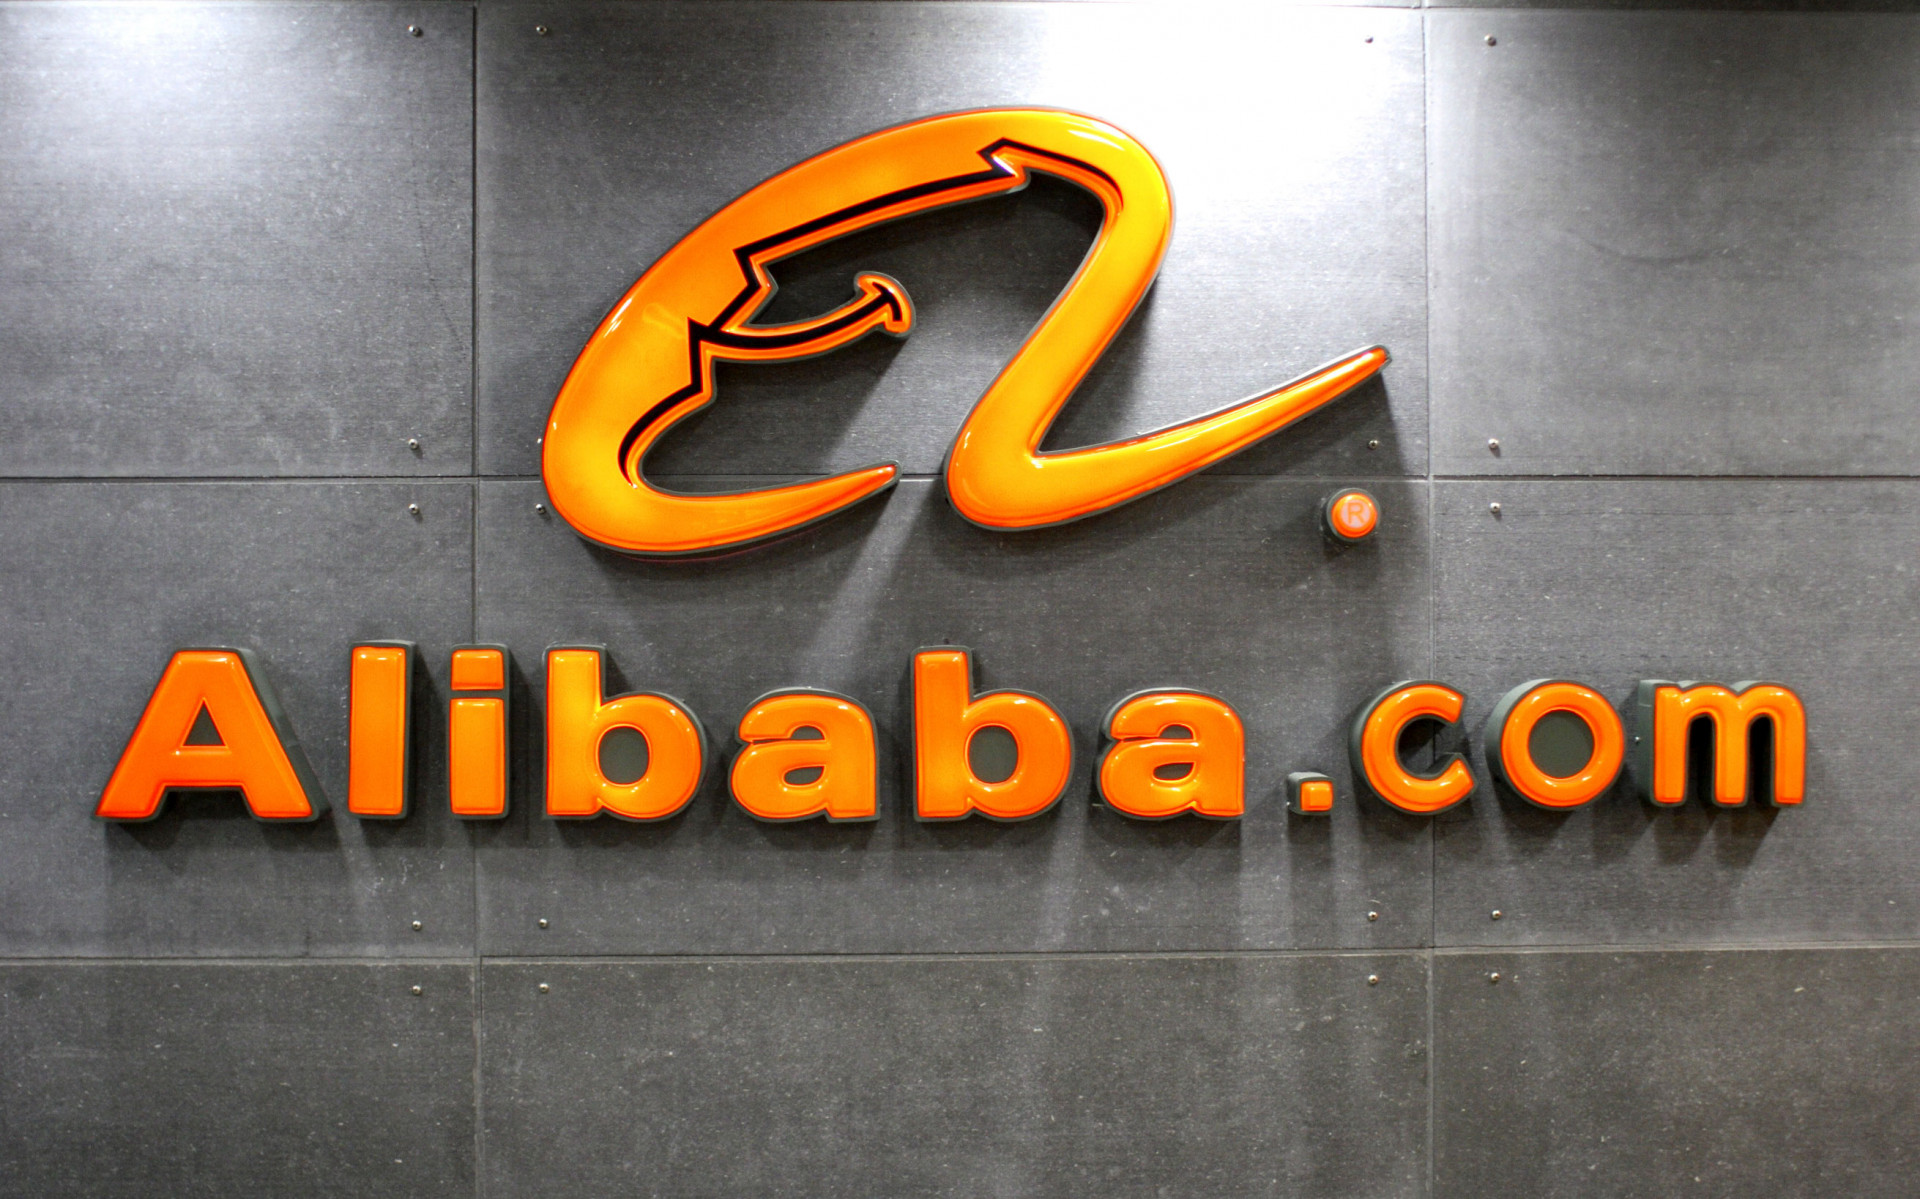 Alibaba spia? I sospetti degli 007 belgi - Formiche.net